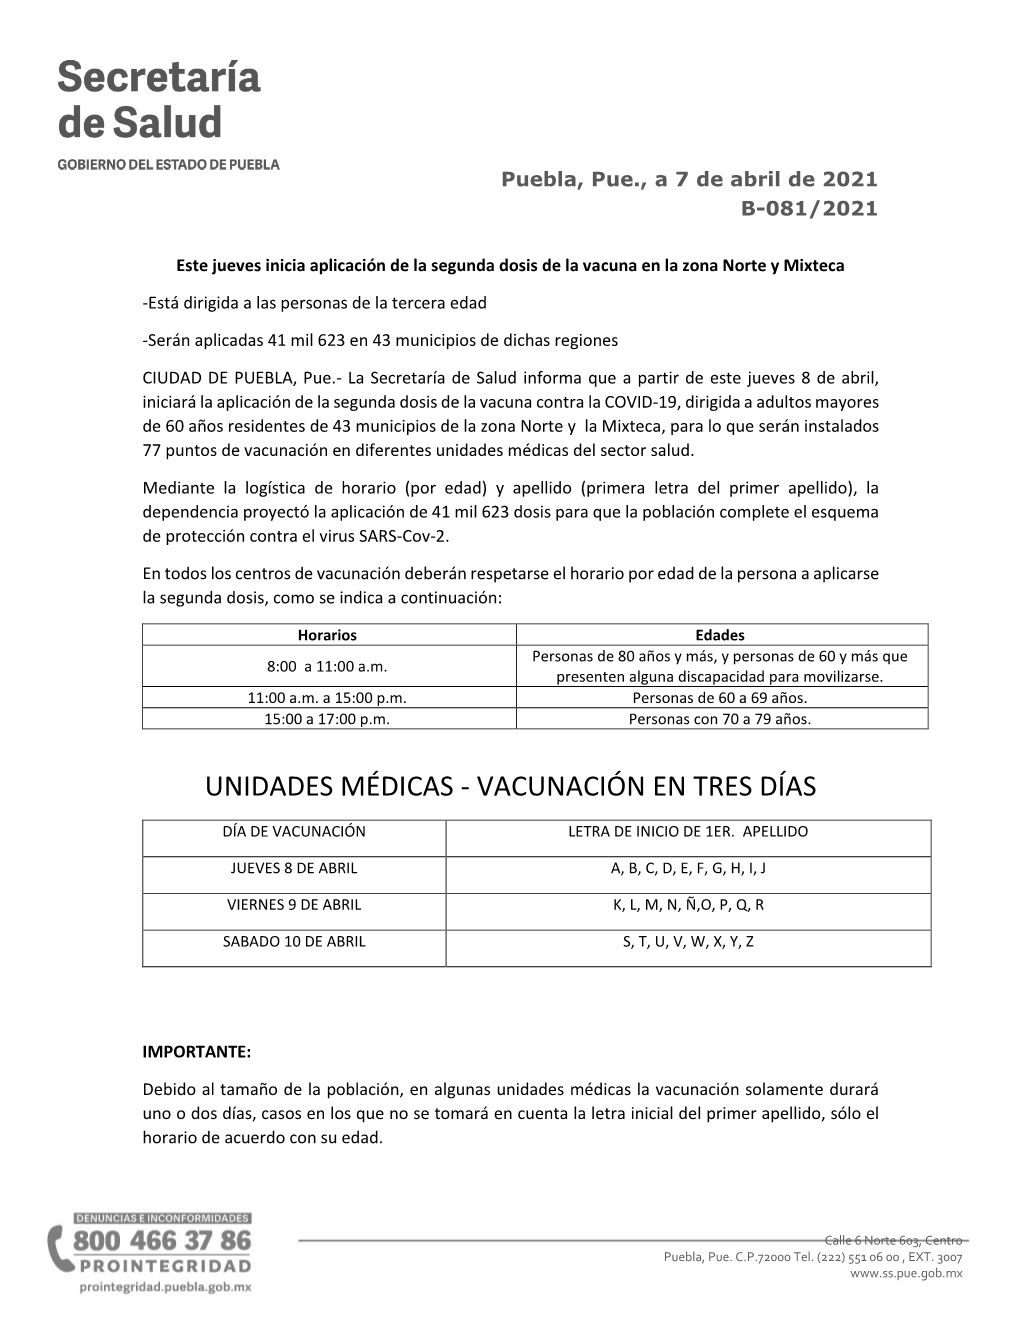 Unidades Médicas Del Sector Salud